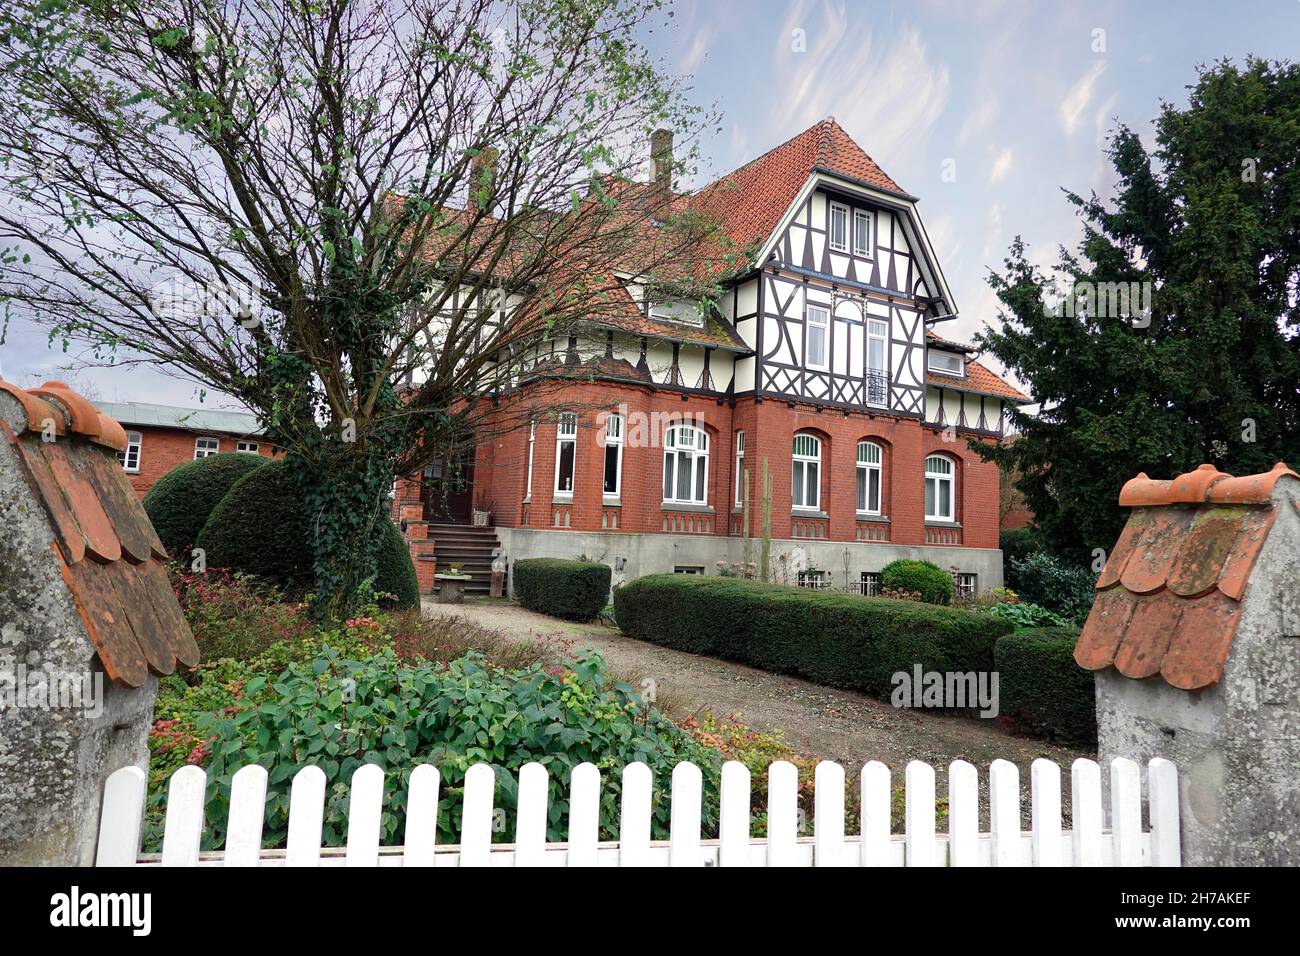 denkmalgeschütztes Wohnhaus a Fachwerk-Ziegel-Bauweise, Niedersachsen, Deutschland, Hansestadt Uelzen Foto Stock